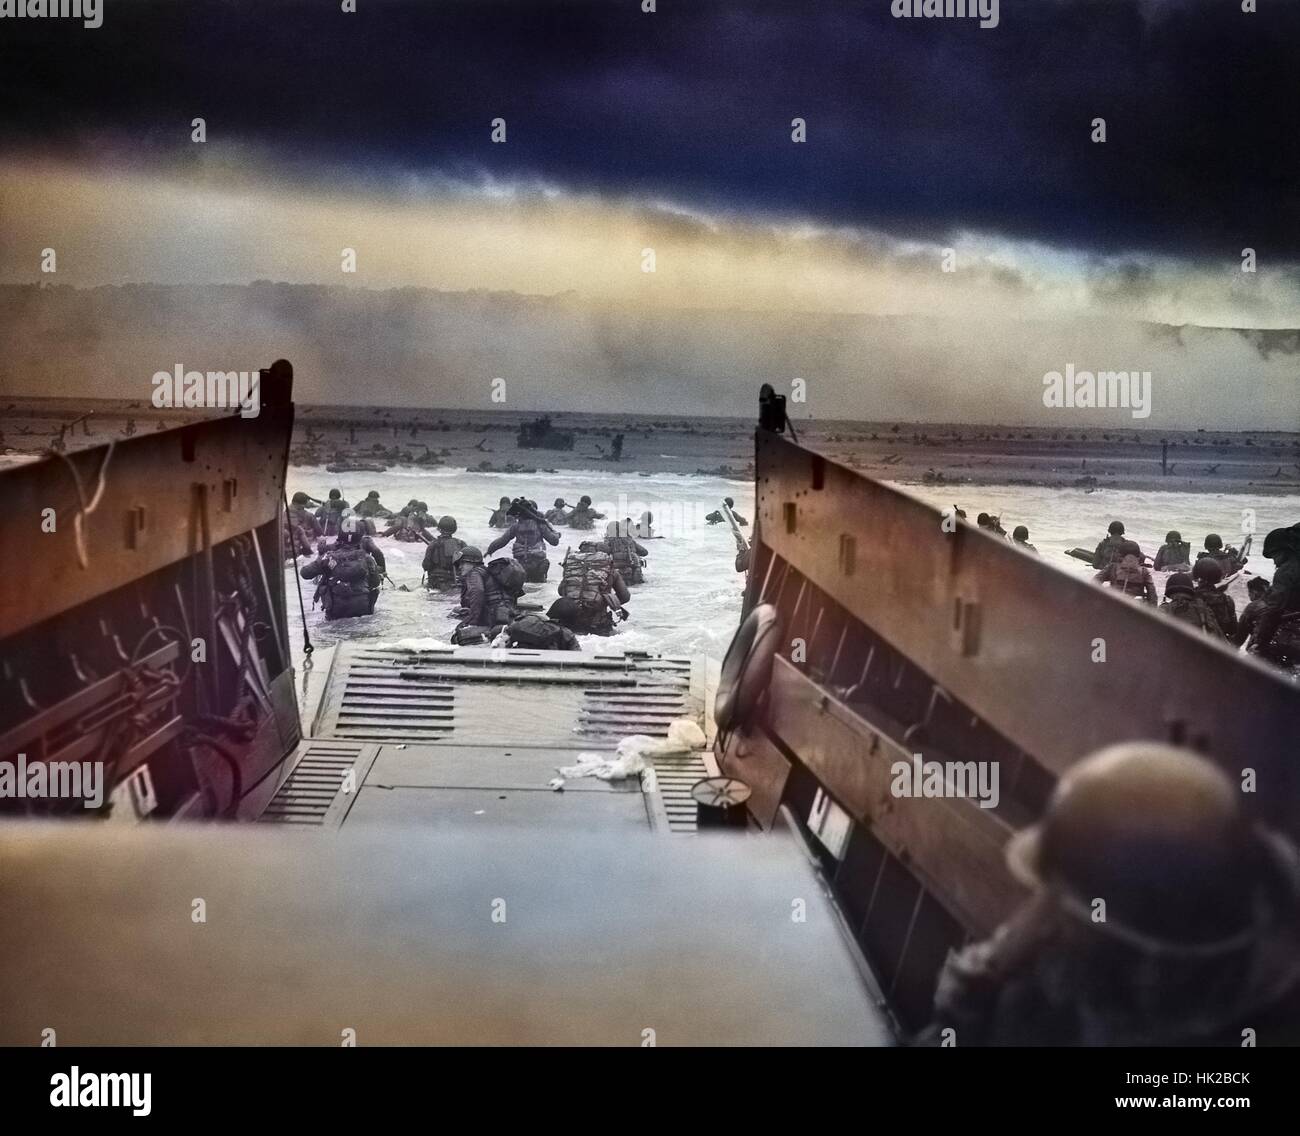 Digital Image in the Jaws of Death, ein Foto von Robert F Sargent von der United States Army erste Infanterie-Division Aussteigen aus einem LCVP (Landing Craft) auf Omaha Beach während der Landung in der Normandie am D-Day während des 2. Weltkrieges, 6. Juni 1944 eingefärbt. Stockfoto